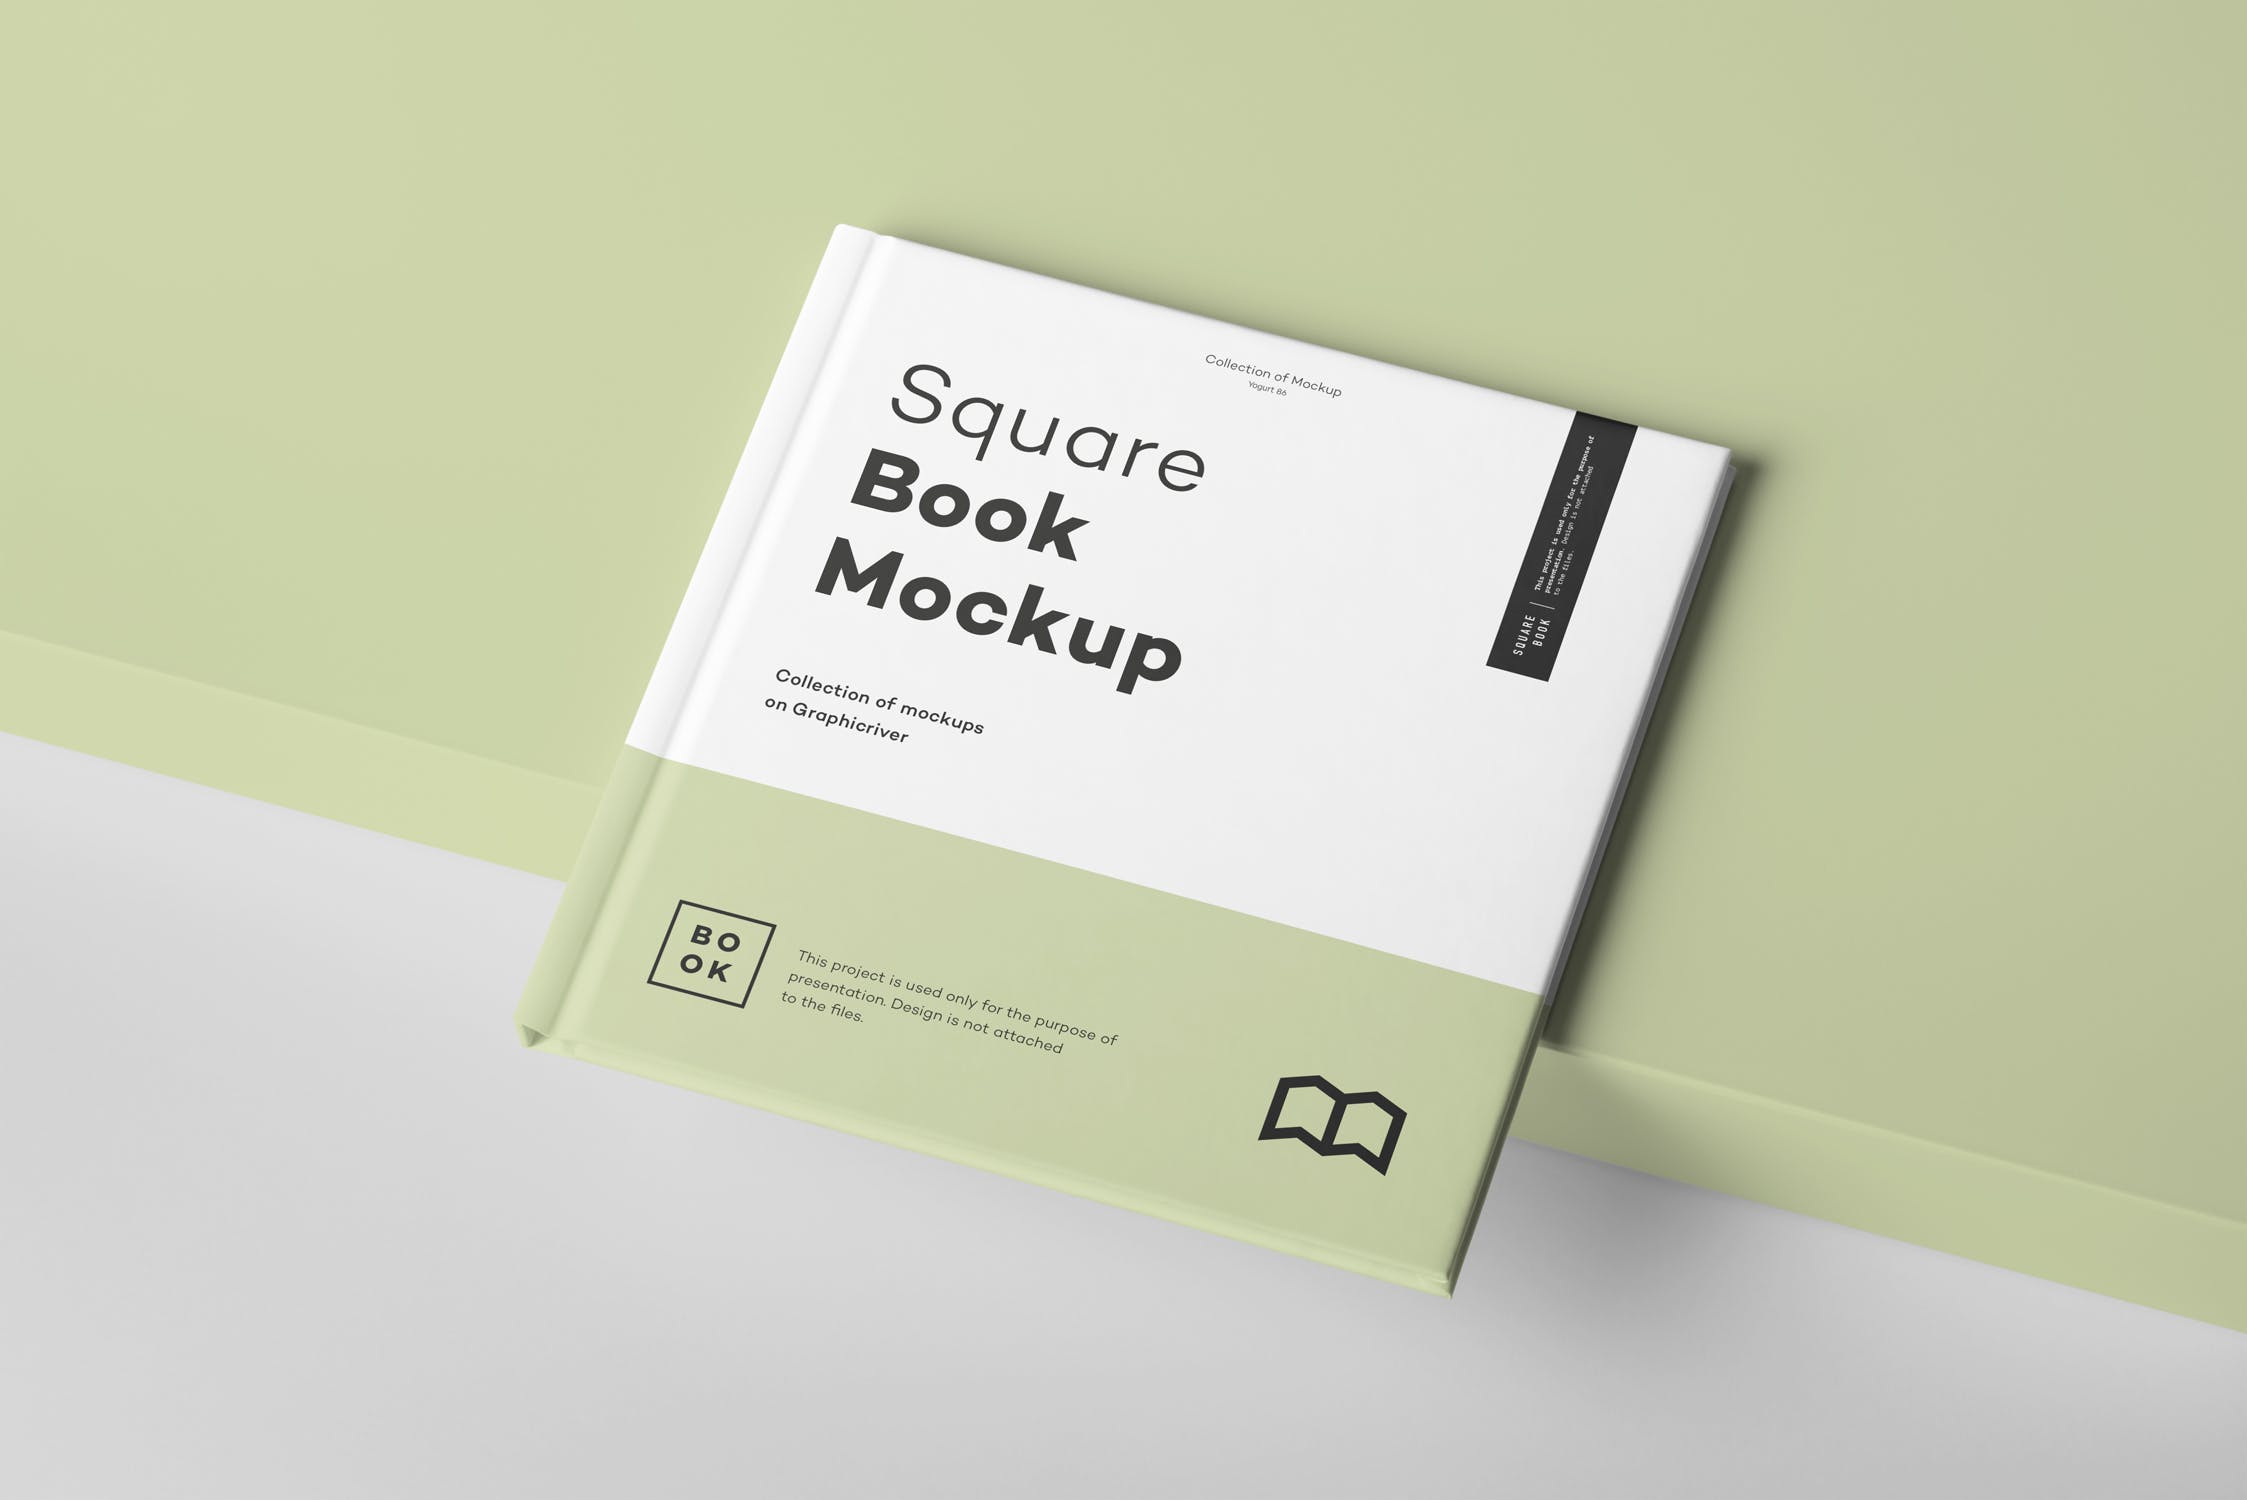 方形精装图书封面&内页版式设计预览样机 Square Book Mock up 2插图(1)